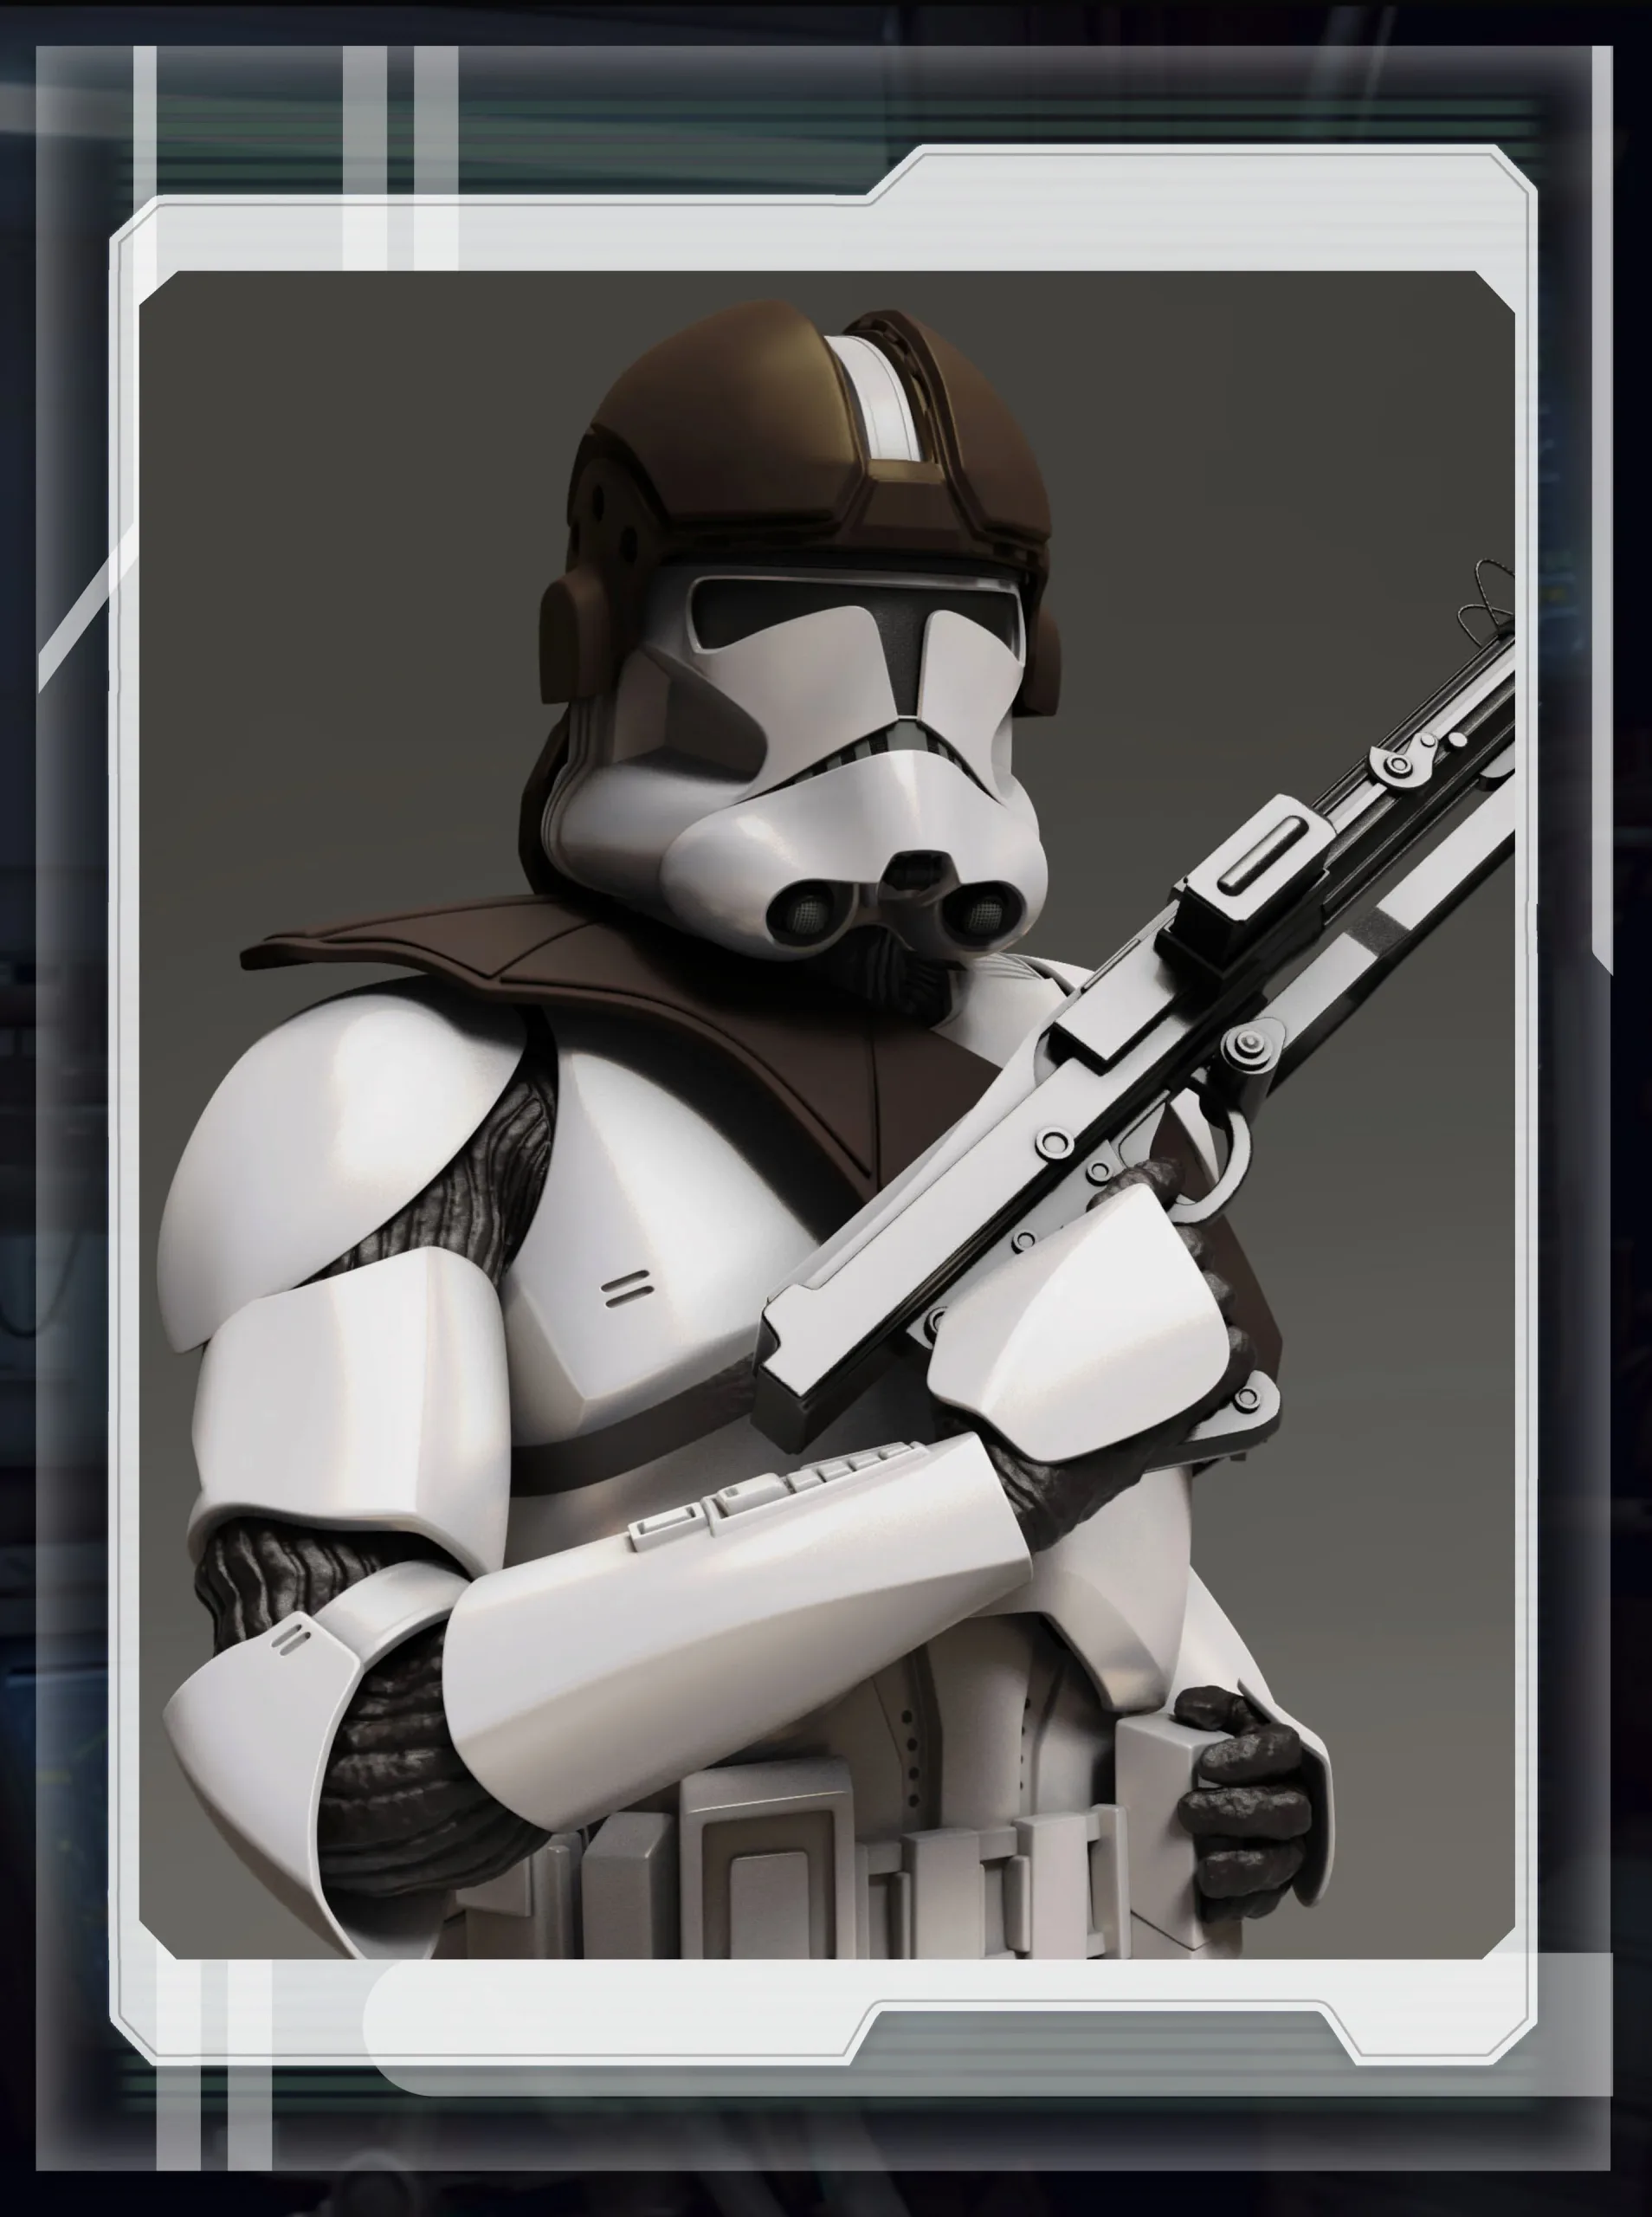 Star wars clone trooper gunner 3d printable figurine